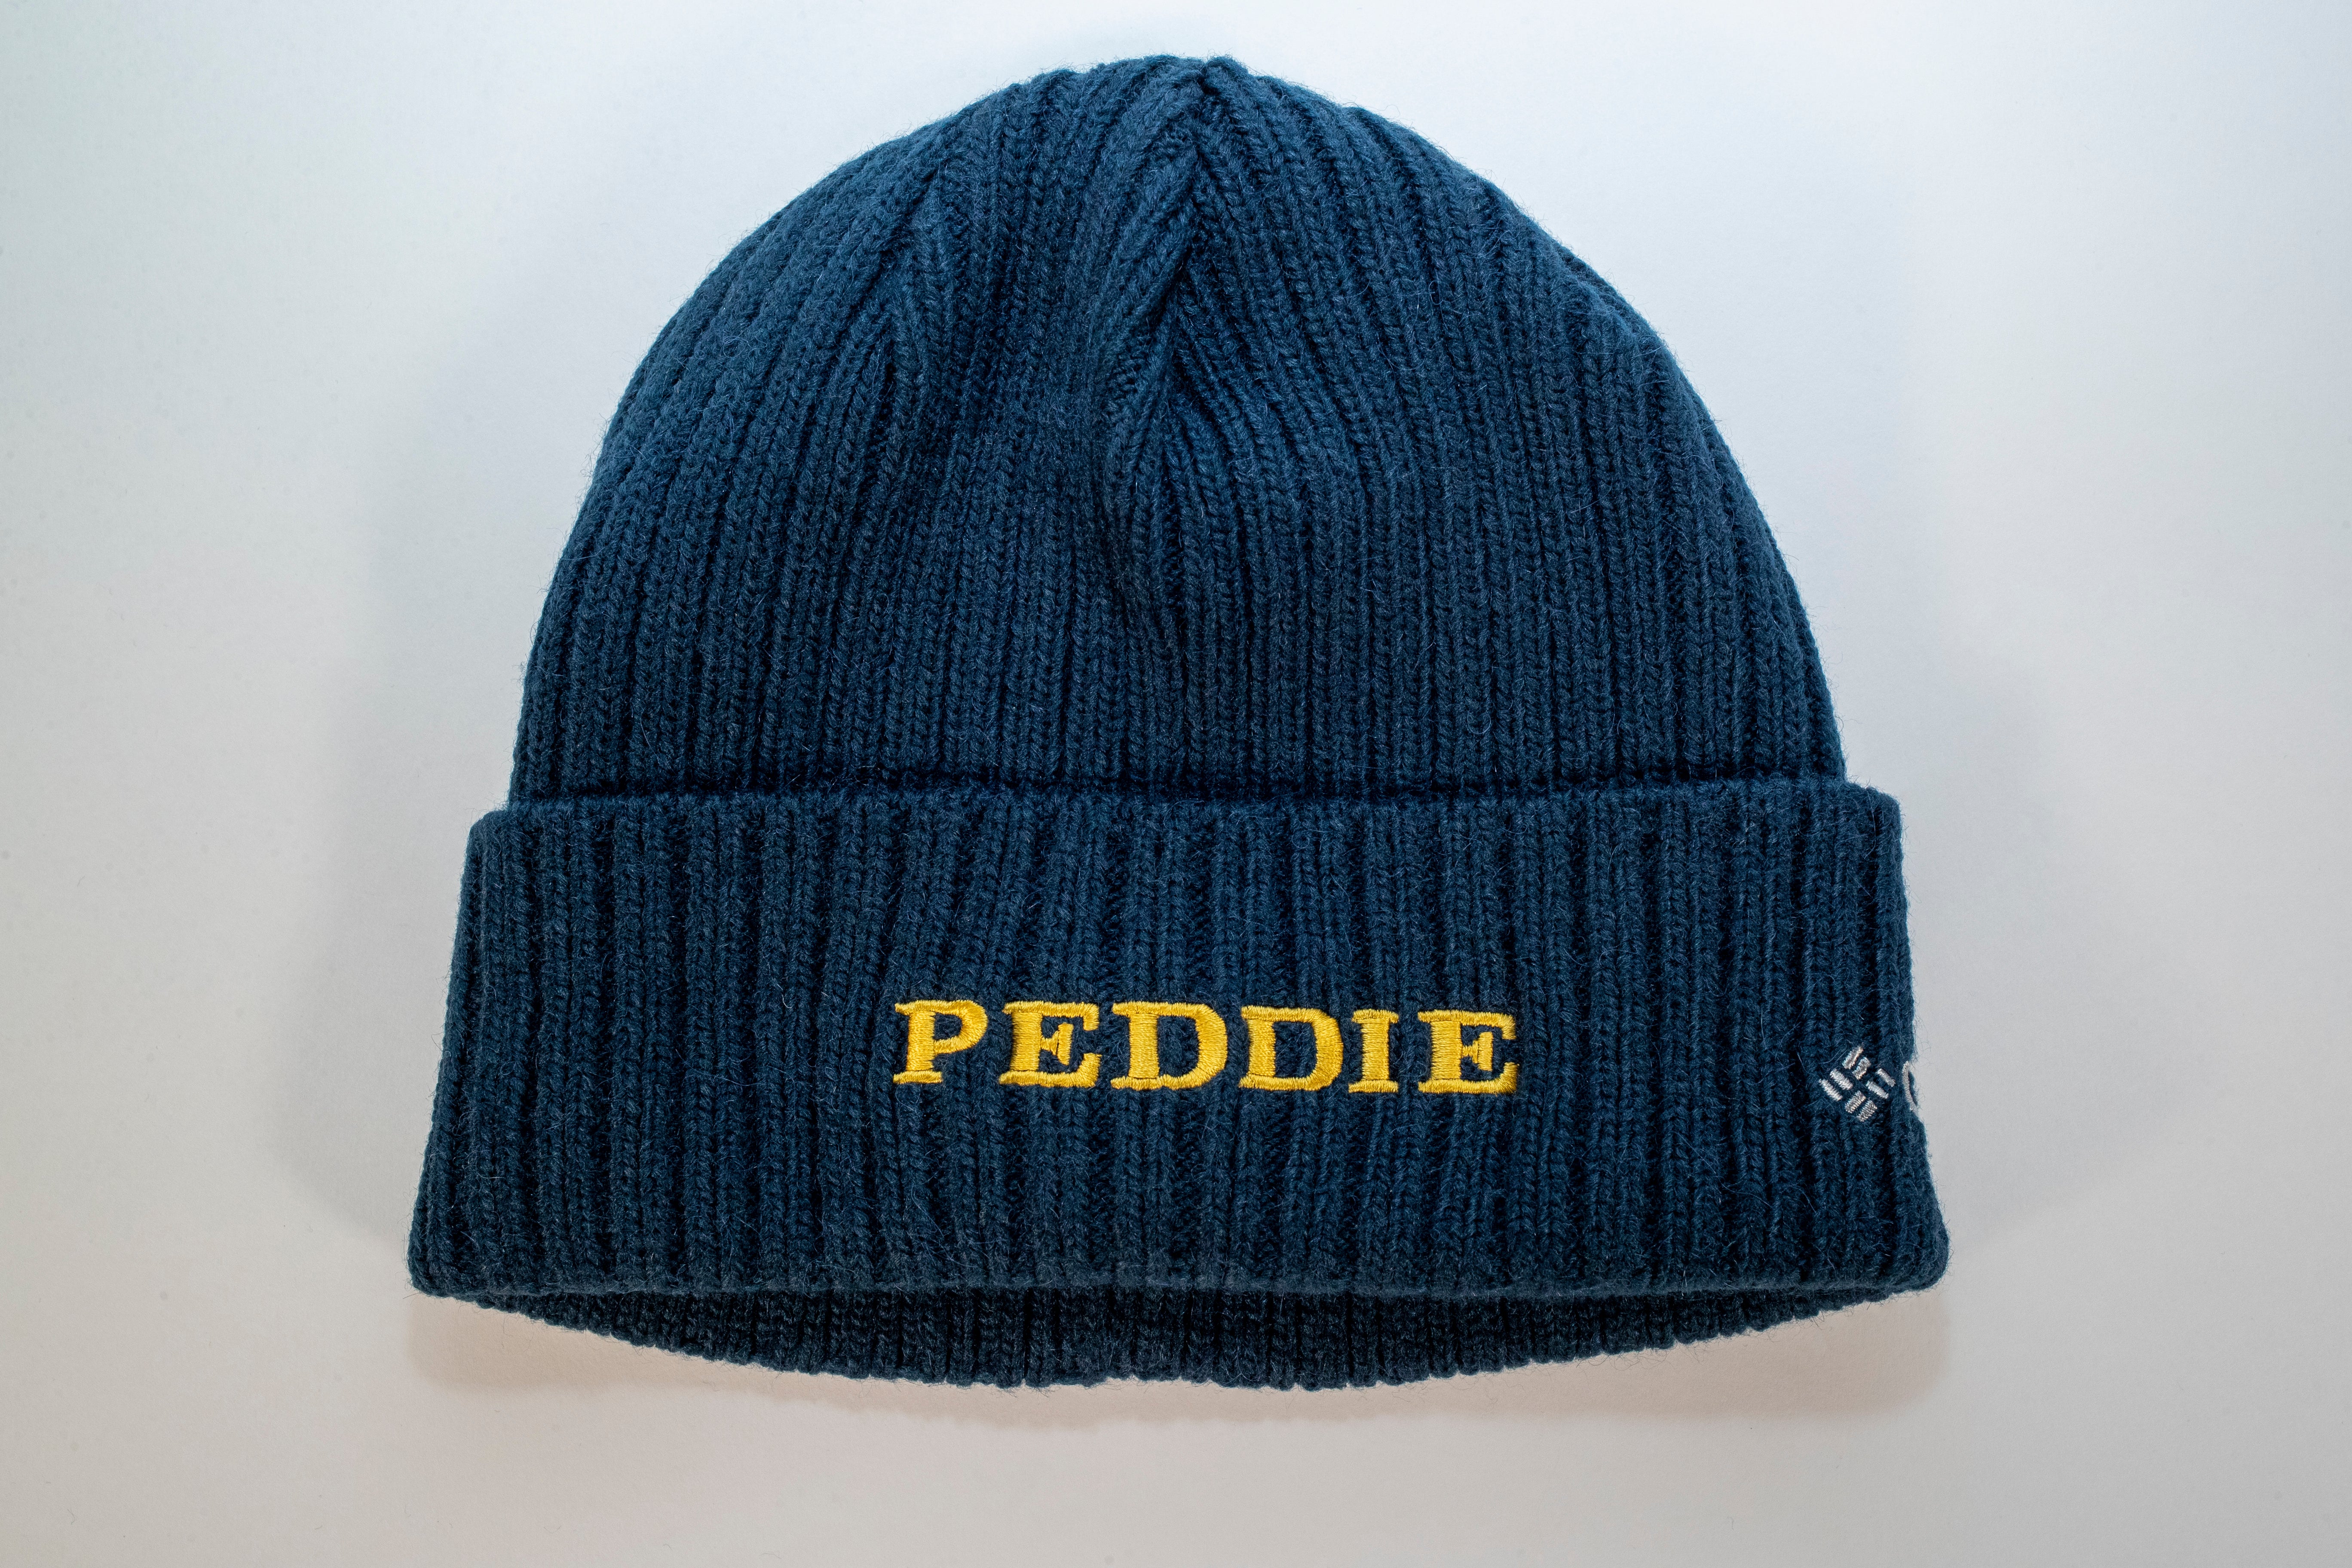 Peddie Beanie Hat